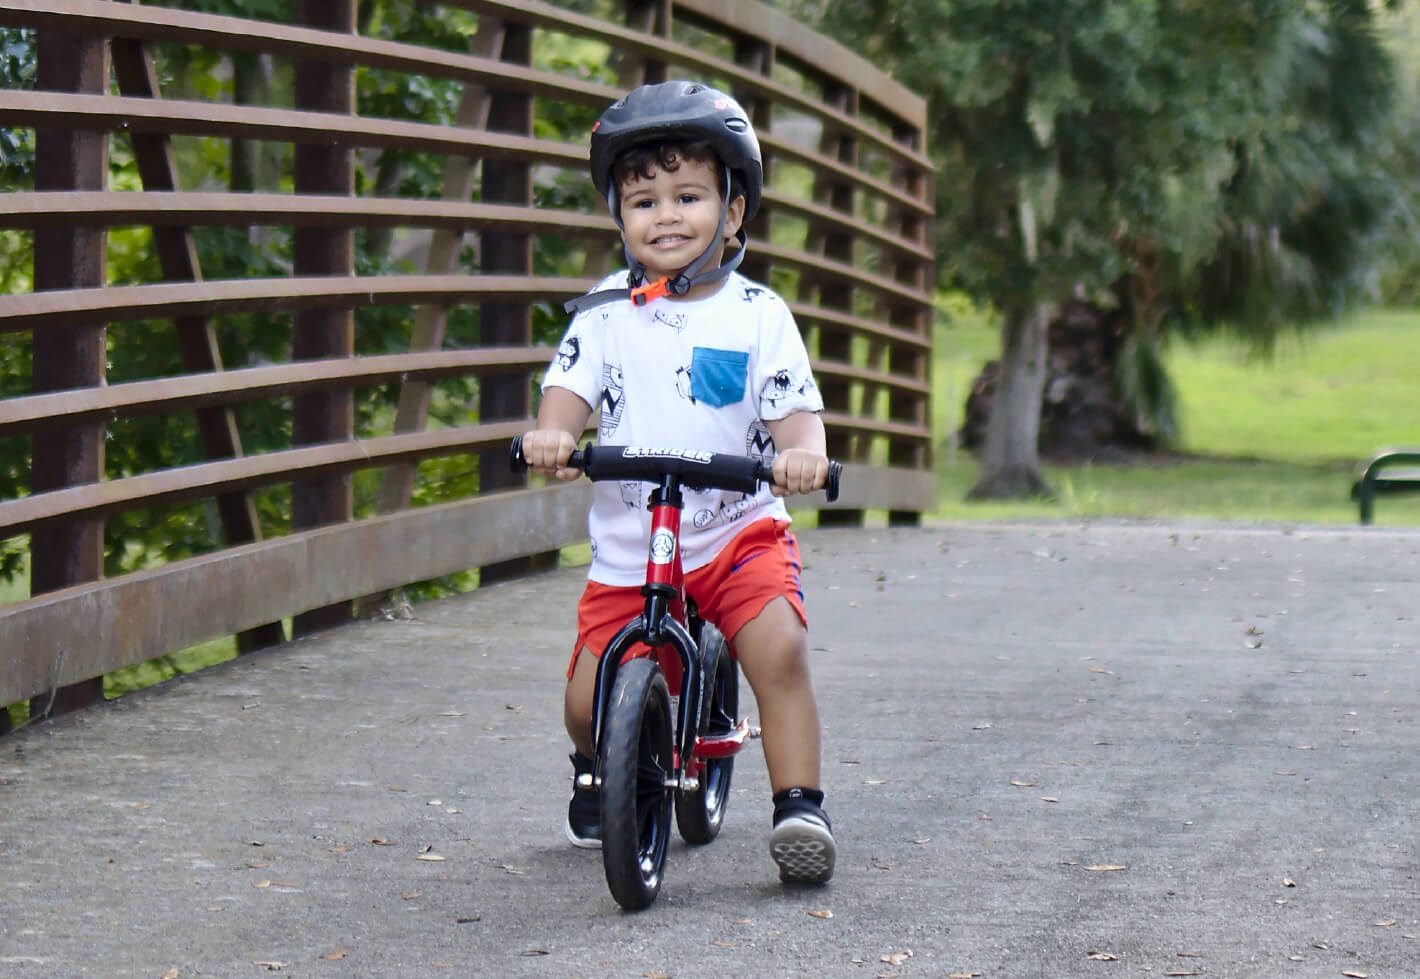 Child on a Strider 12 Balance Bike